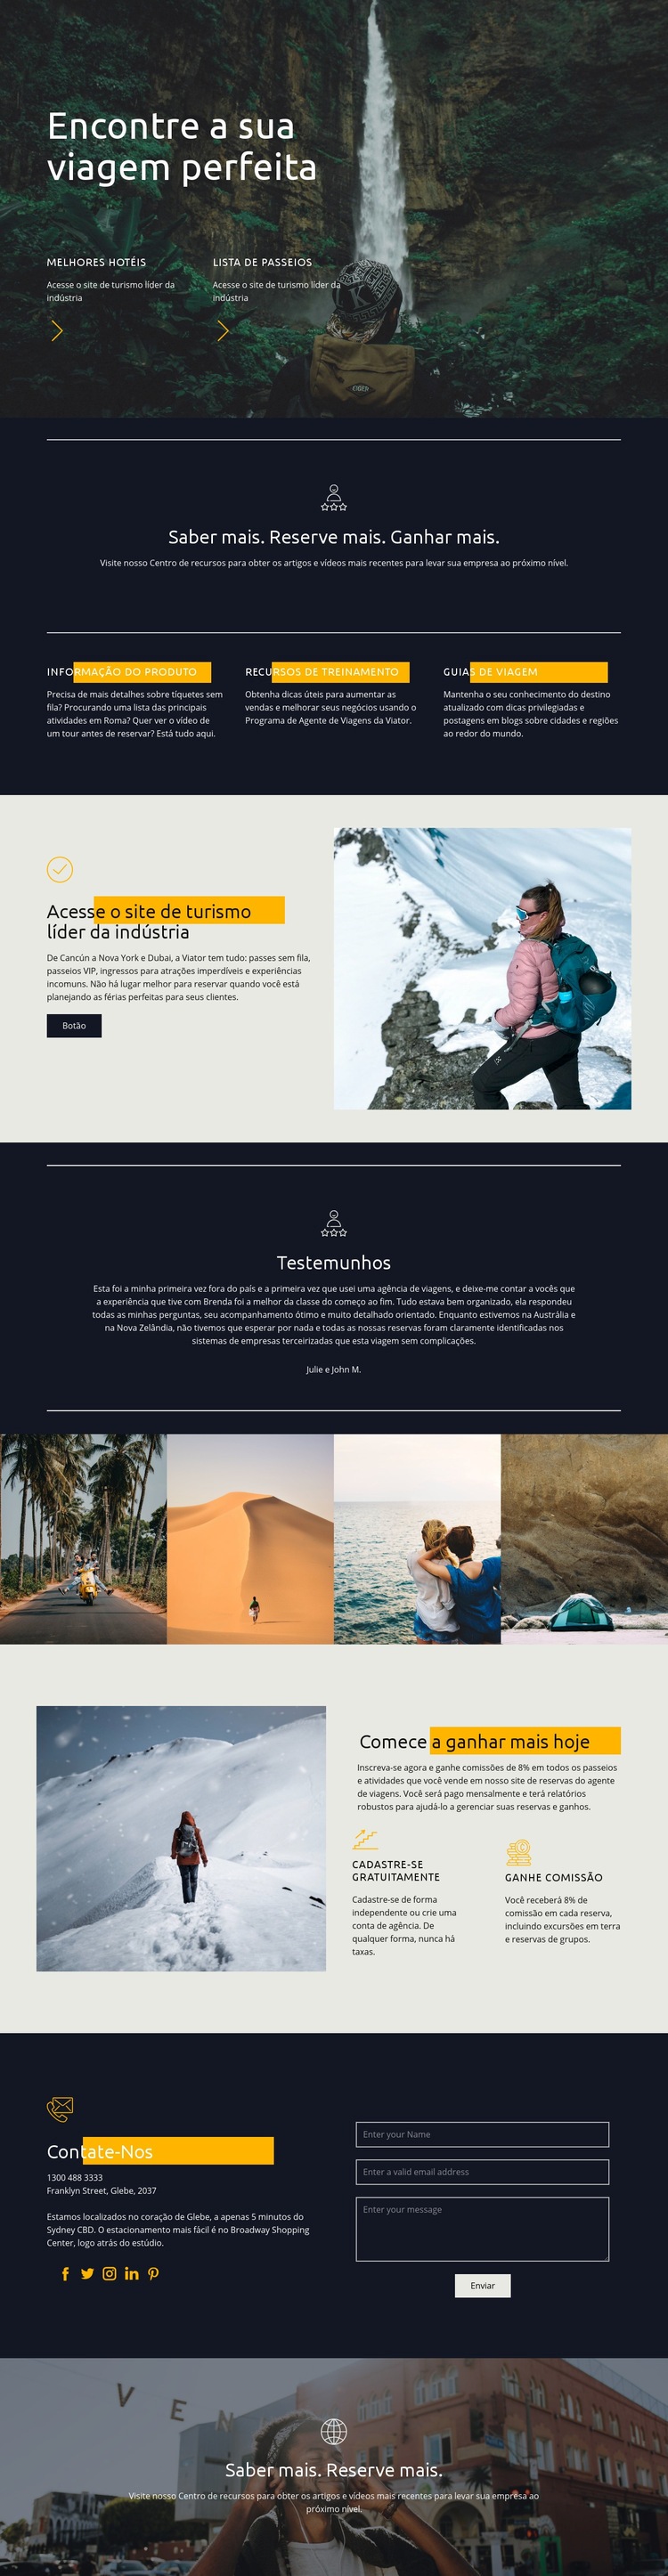 Encontre sua viagem perfeita Design do site